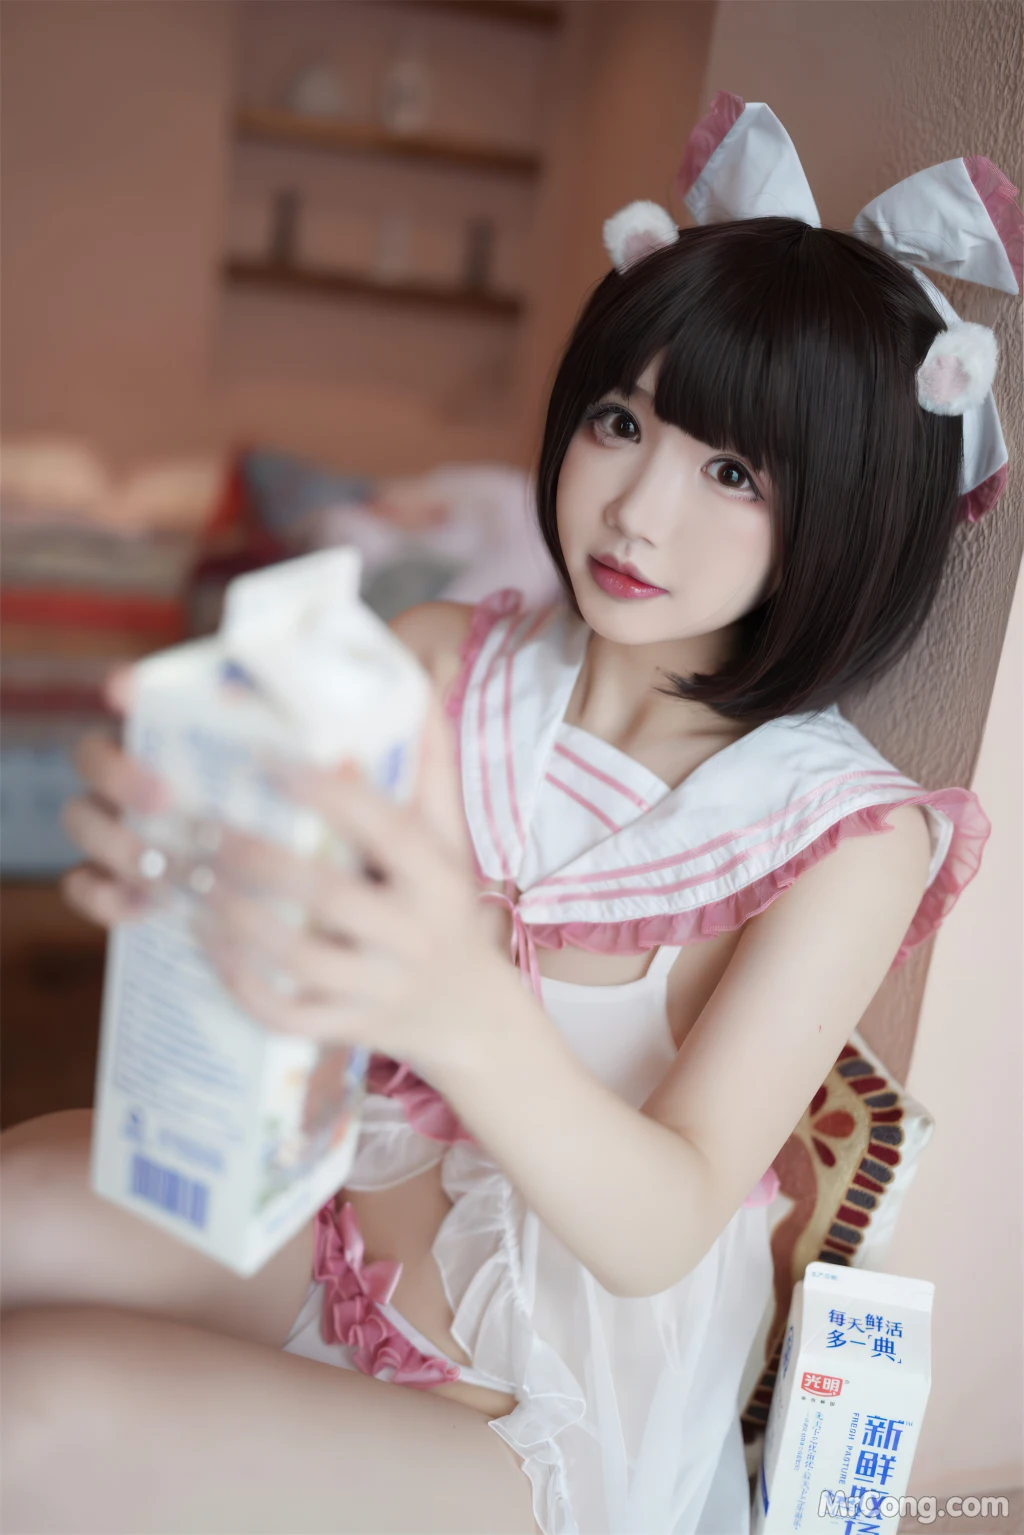 Coser@雪晴Astra (雪晴嘟嘟) Vol.046: 浴缸牛奶 (62 photos) photo 1-1